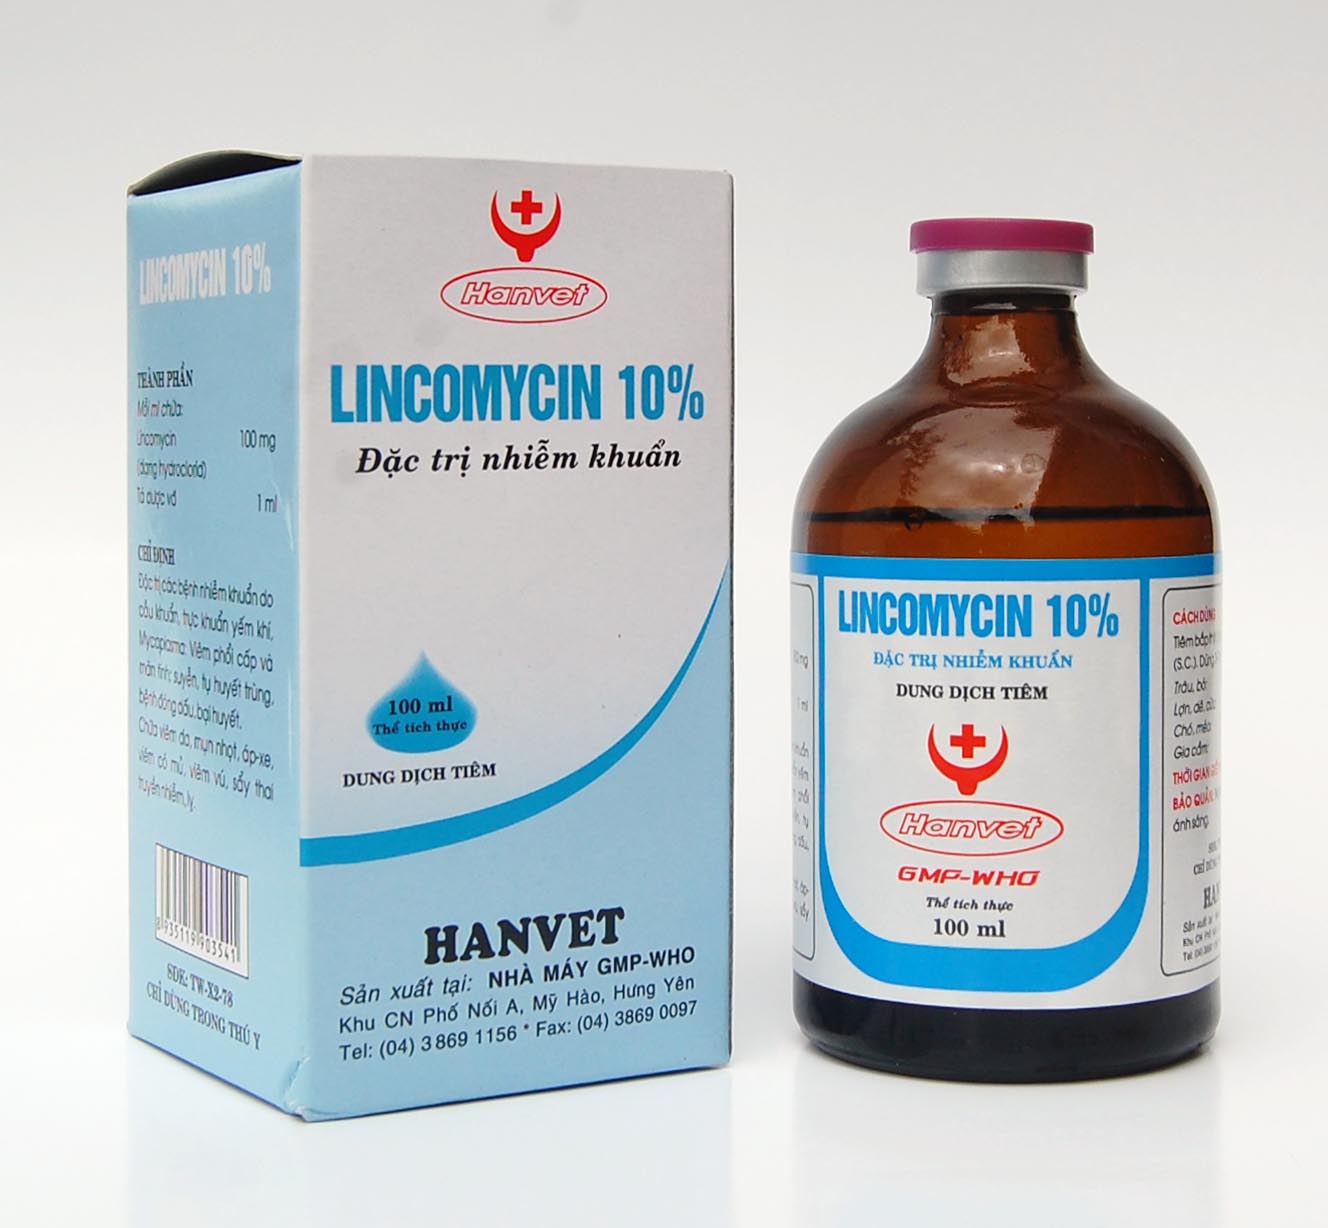 LINCOMYCIN 10%